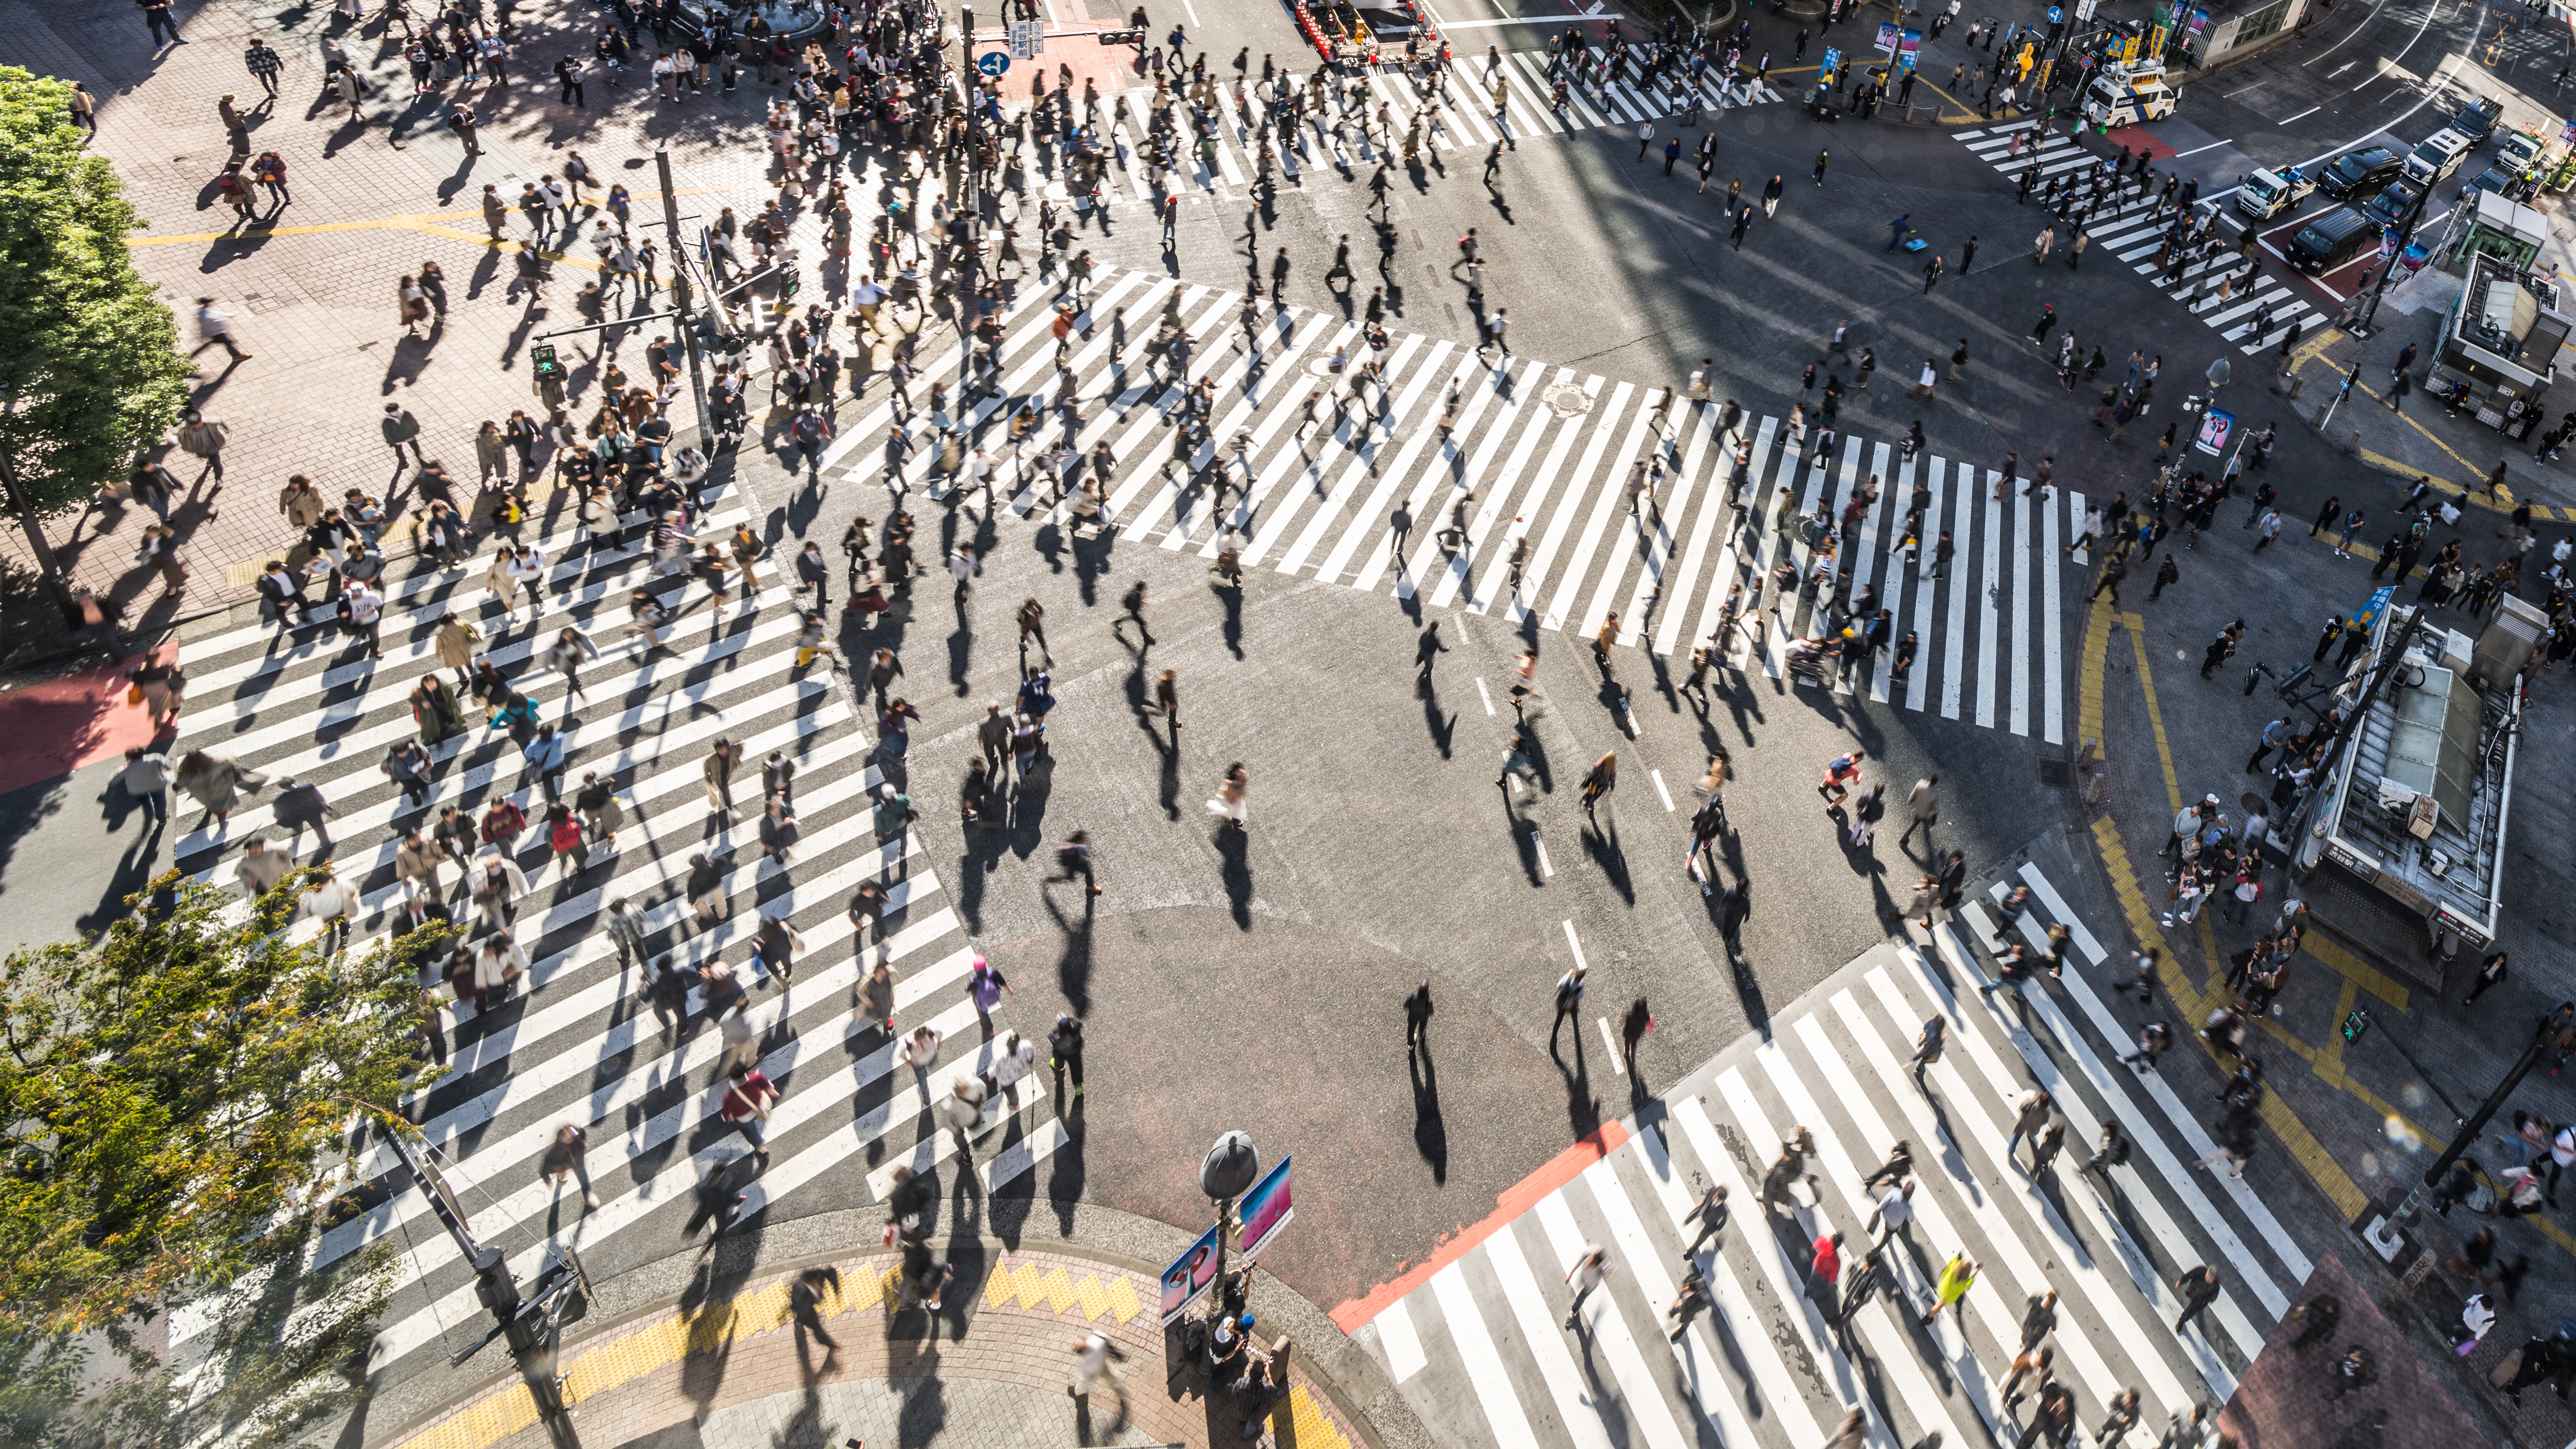 Se han implementado cruces de peatones tipo scramble en varias ciudades grandes de los EE. UU. y en todo el mundo donde hay un gran volumen de peatones.